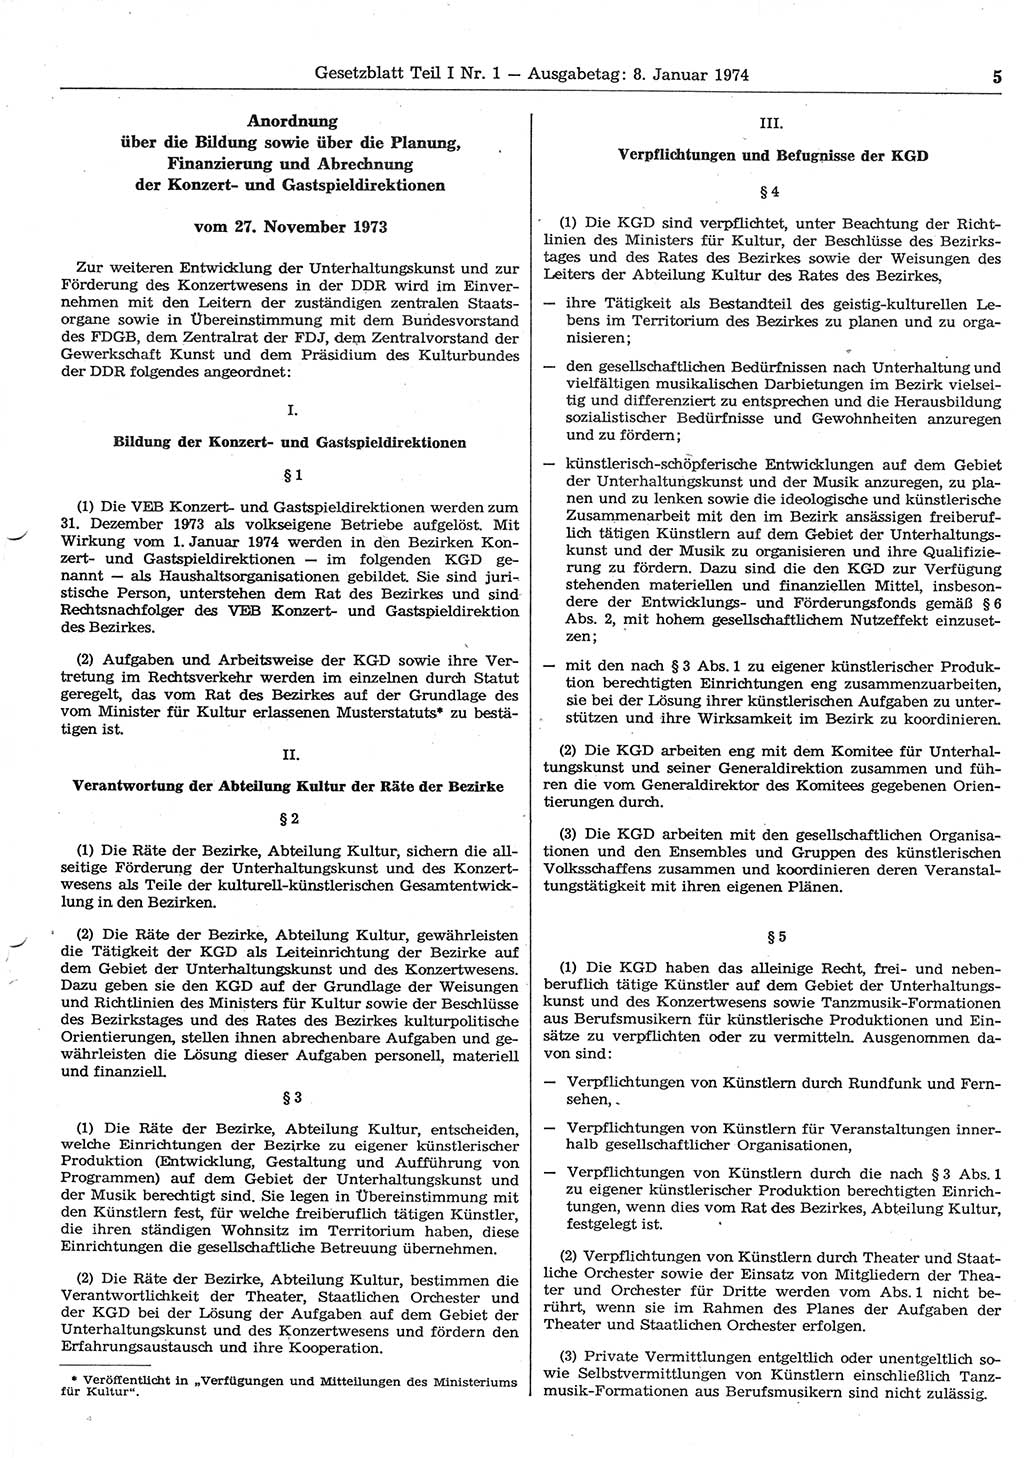 Gesetzblatt (GBl.) der Deutschen Demokratischen Republik (DDR) Teil Ⅰ 1974, Seite 5 (GBl. DDR Ⅰ 1974, S. 5)